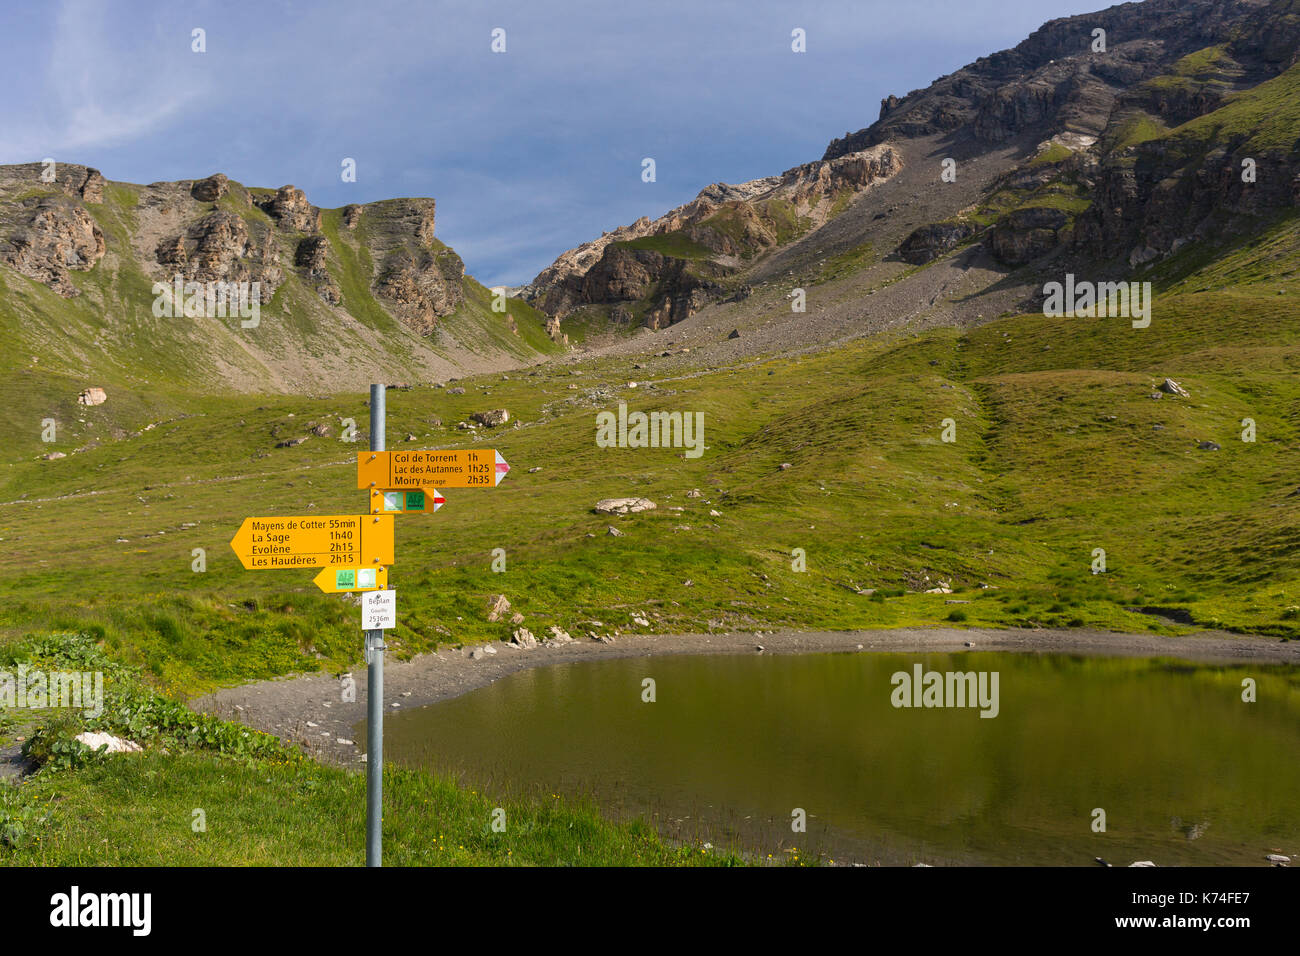 La sauge, Suisse - trail de signes, le paysage au-dessus de village de la sauge, sur le sentier de randonnée de la haute route, canton du Valais. Banque D'Images